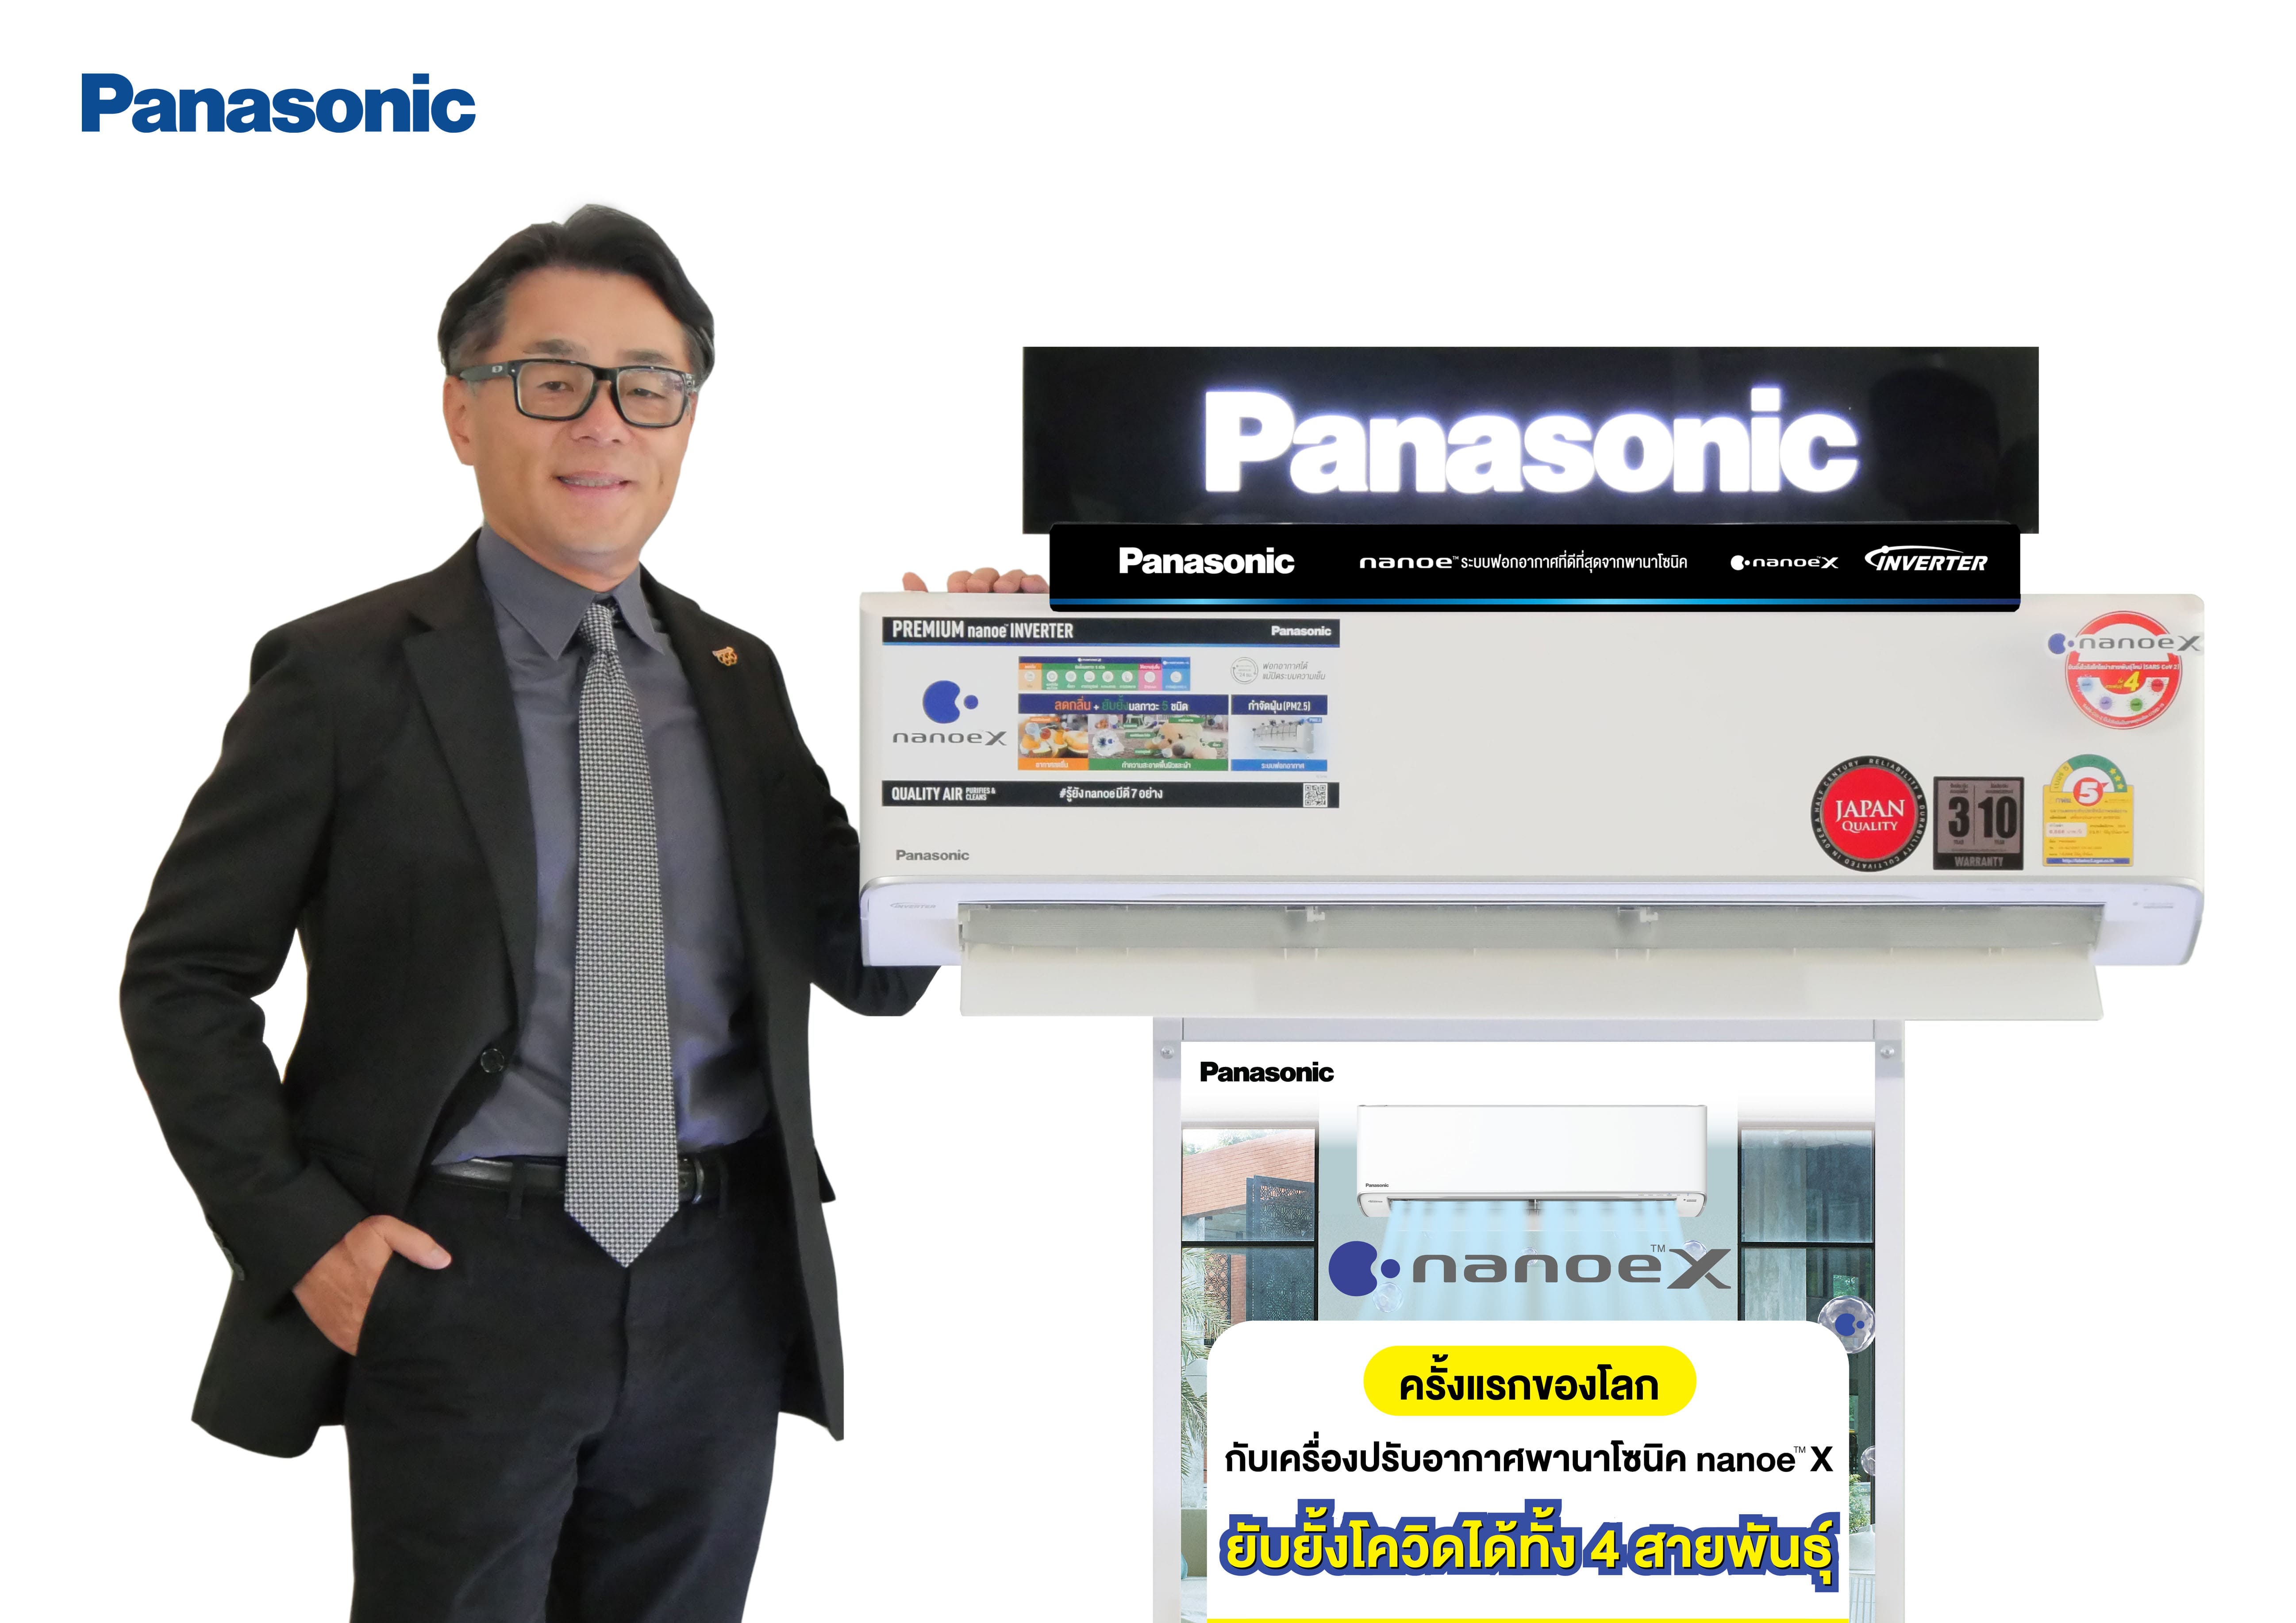 Panasonic's nanoe